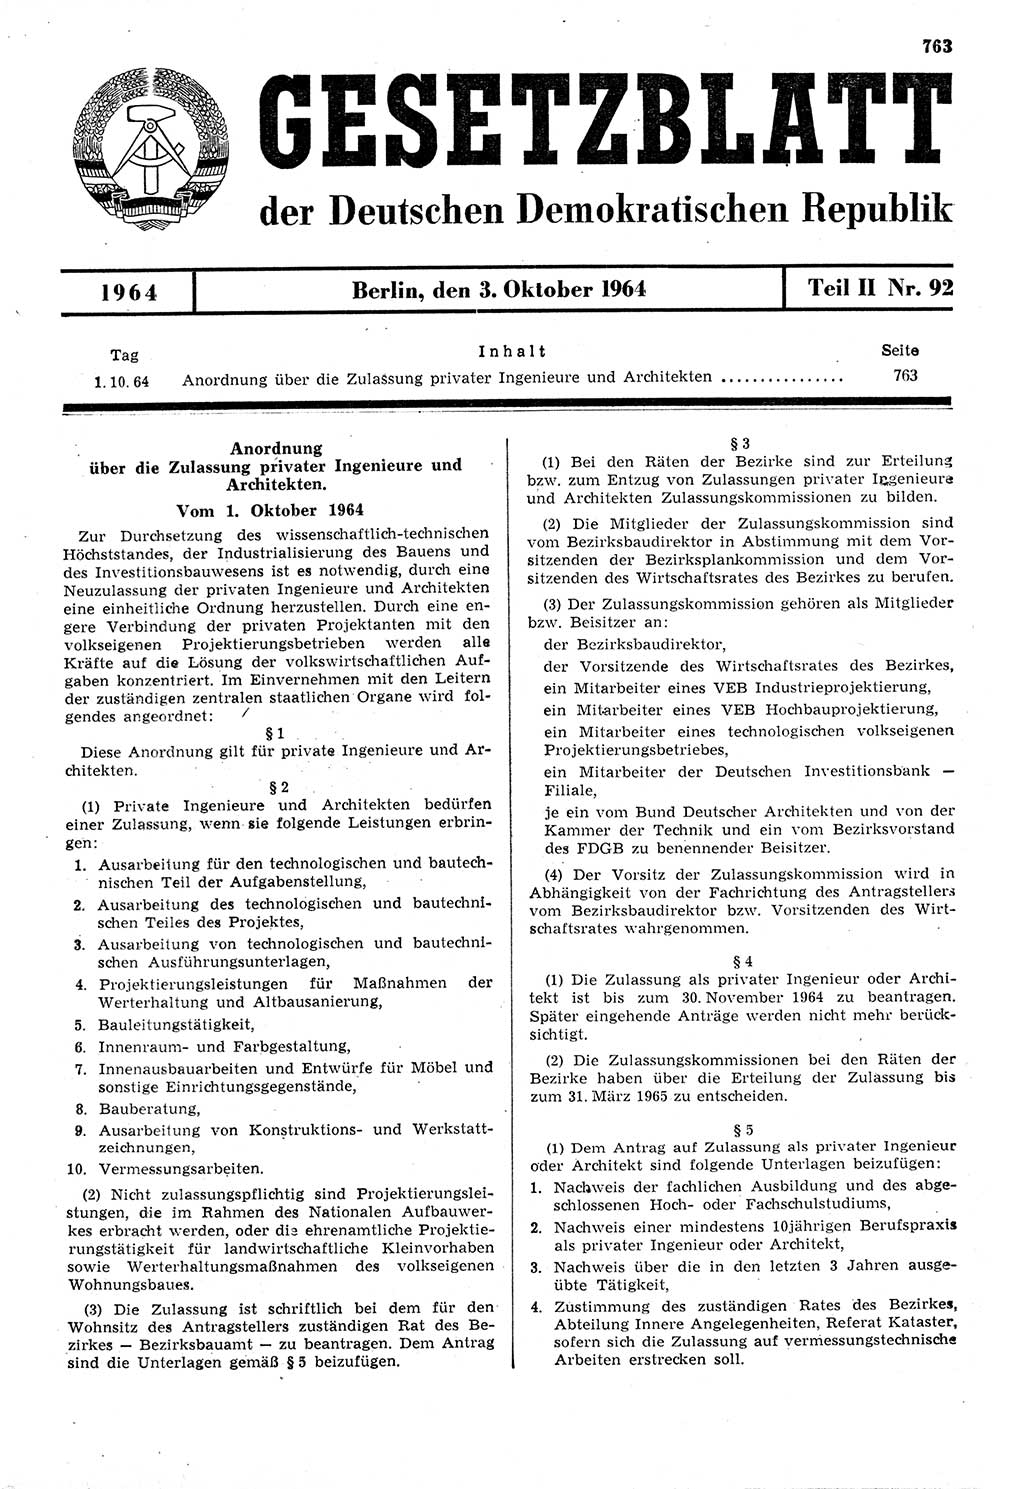 Gesetzblatt (GBl.) der Deutschen Demokratischen Republik (DDR) Teil ⅠⅠ 1964, Seite 763 (GBl. DDR ⅠⅠ 1964, S. 763)